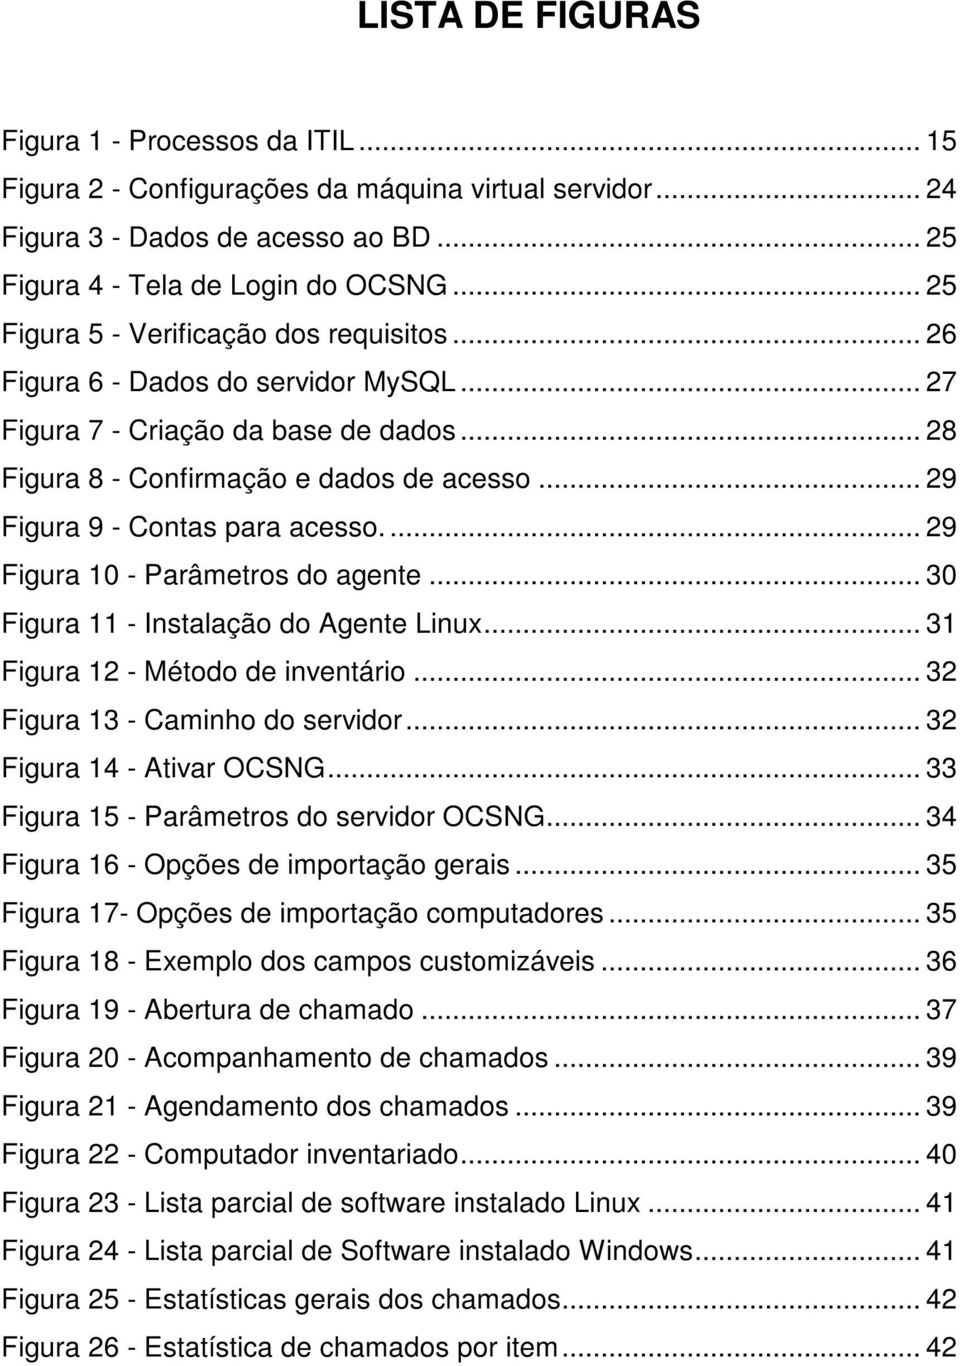 .. 29 Figura 9 - Contas para acesso.... 29 Figura 10 - Parâmetros do agente... 30 Figura 11 - Instalação do Agente Linux... 31 Figura 12 - Método de inventário... 32 Figura 13 - Caminho do servidor.